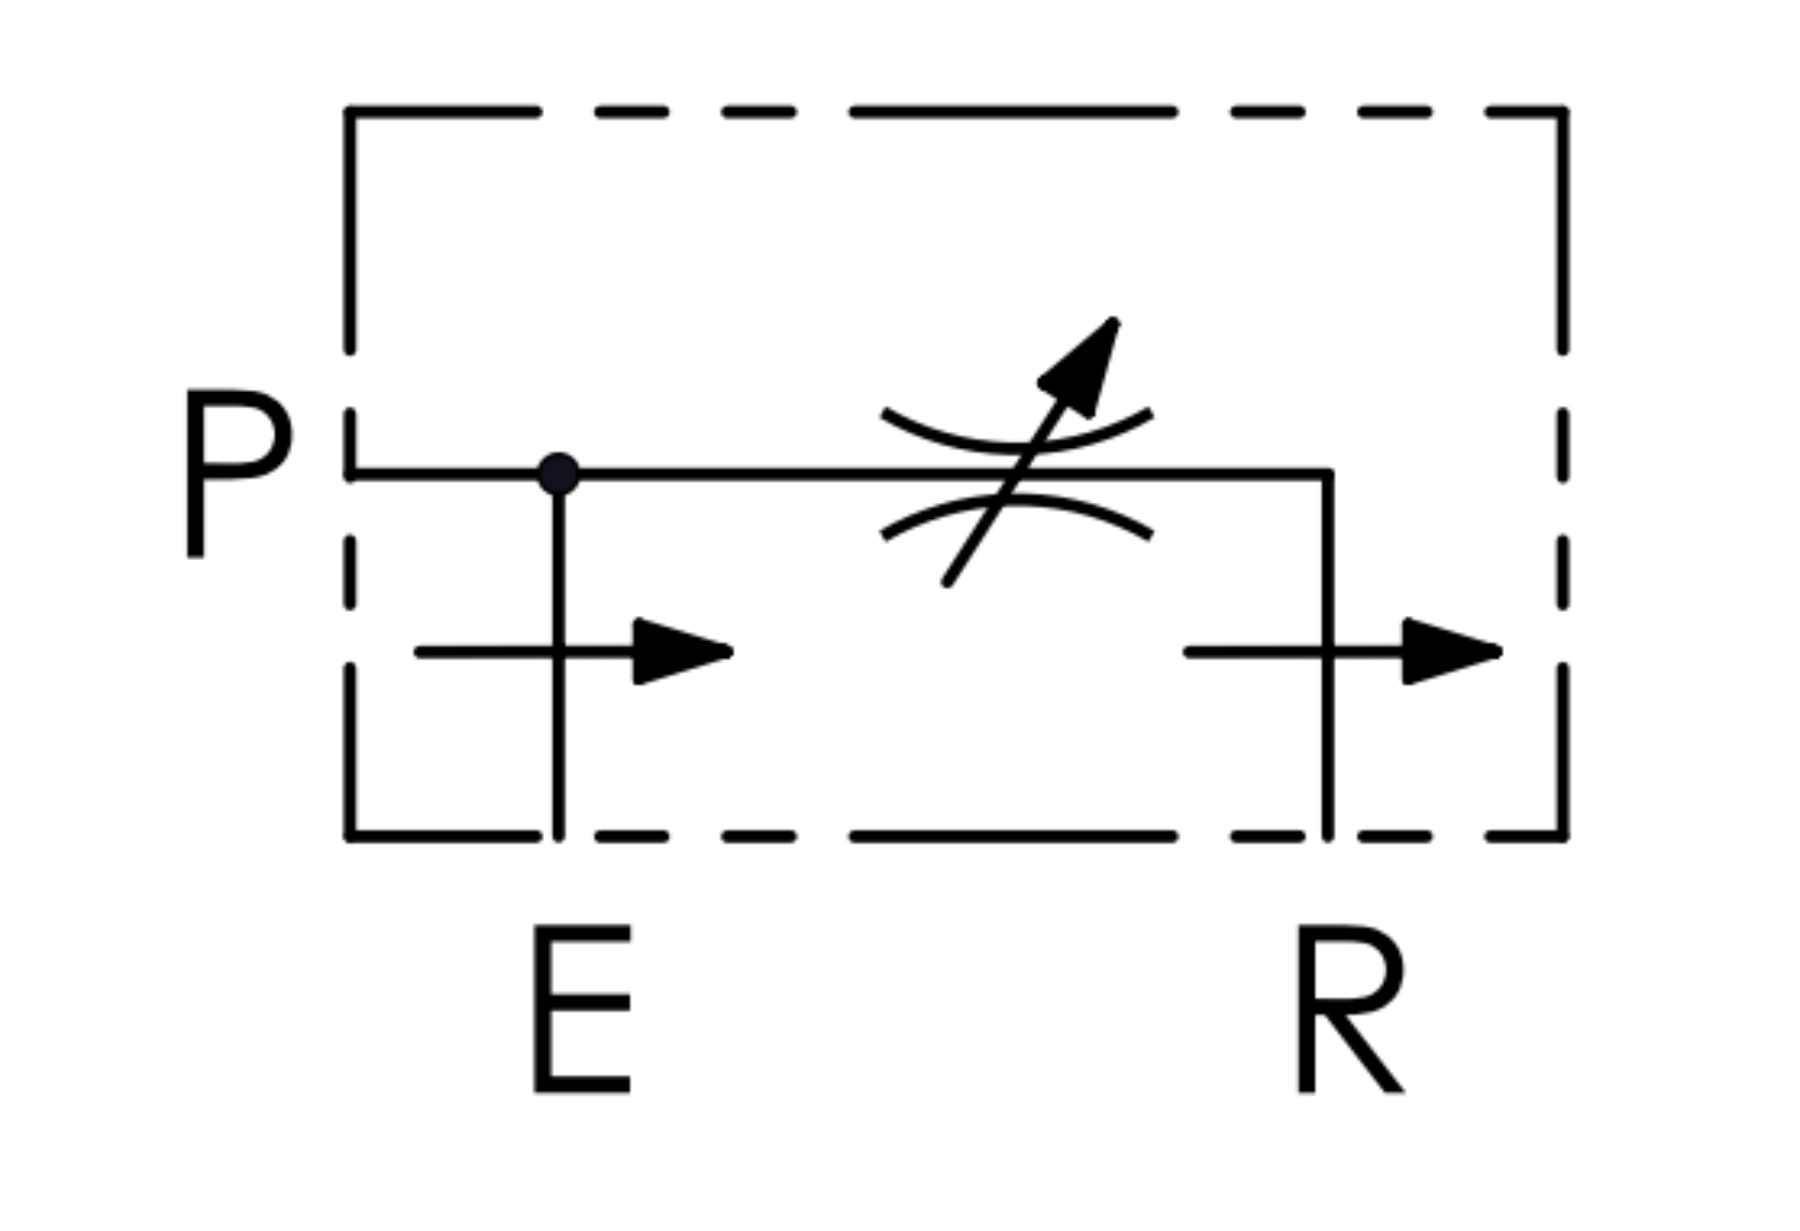 схема 3-х линейного регулятора потока с компенсацией по давлению — VPP Oleoweb